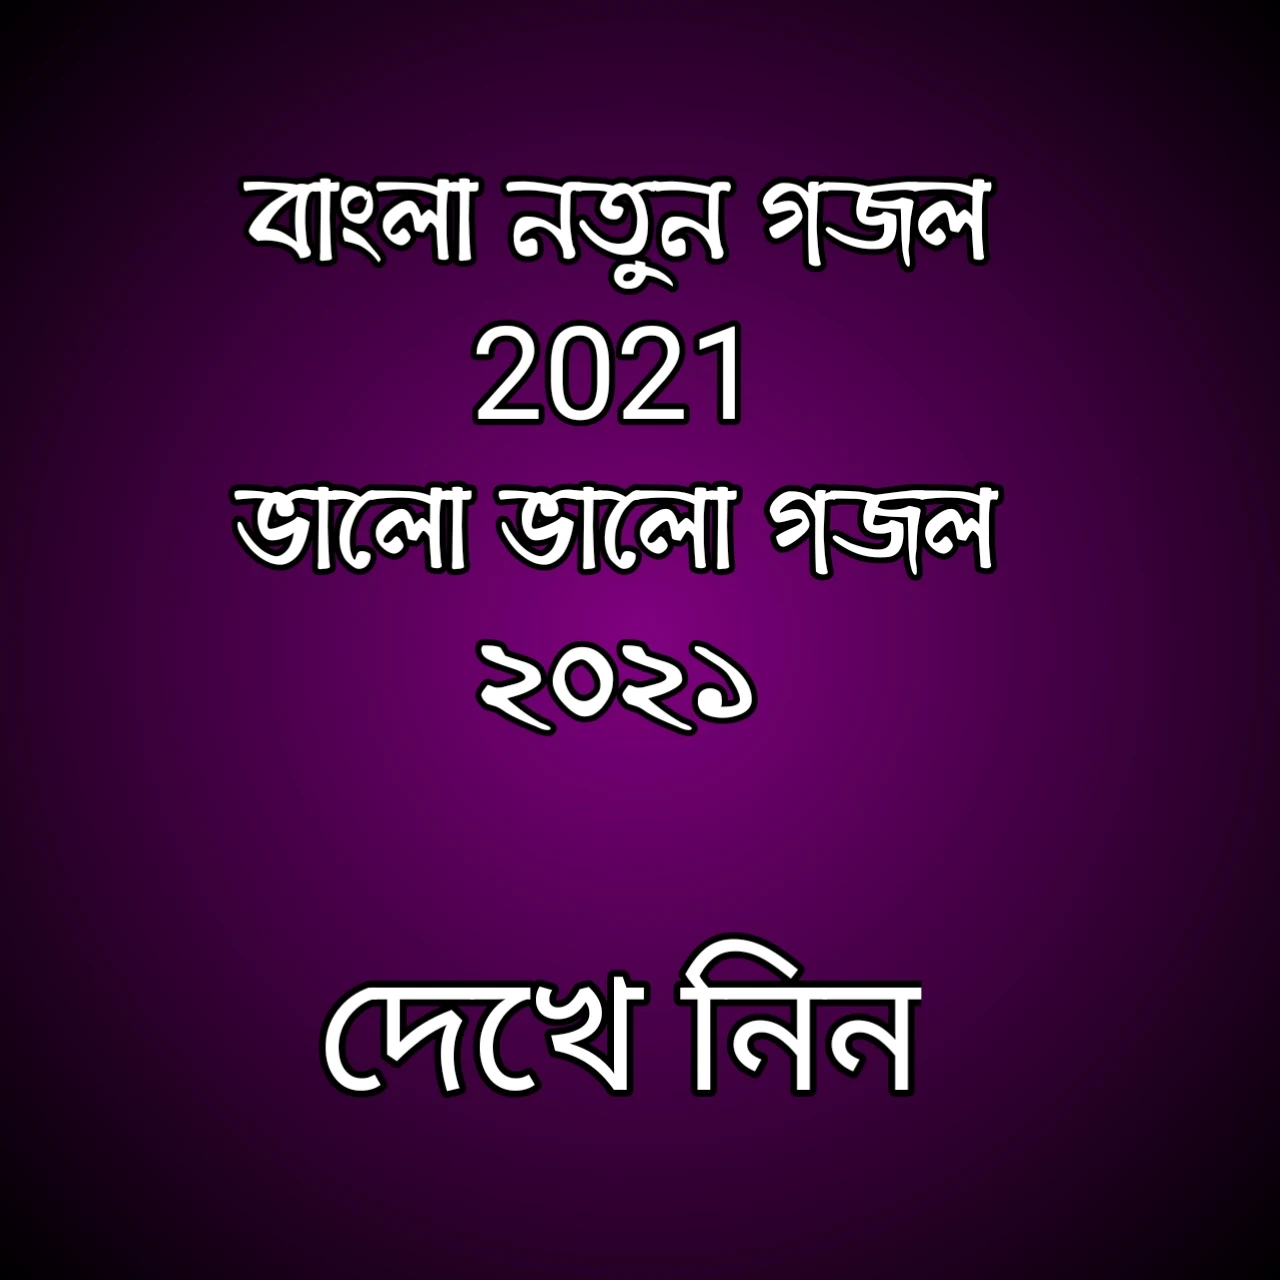 বাংলা গজল 2021, ভালো ভালো গজল ২০২১, গজল নতুন ২০২১, গজল 2021